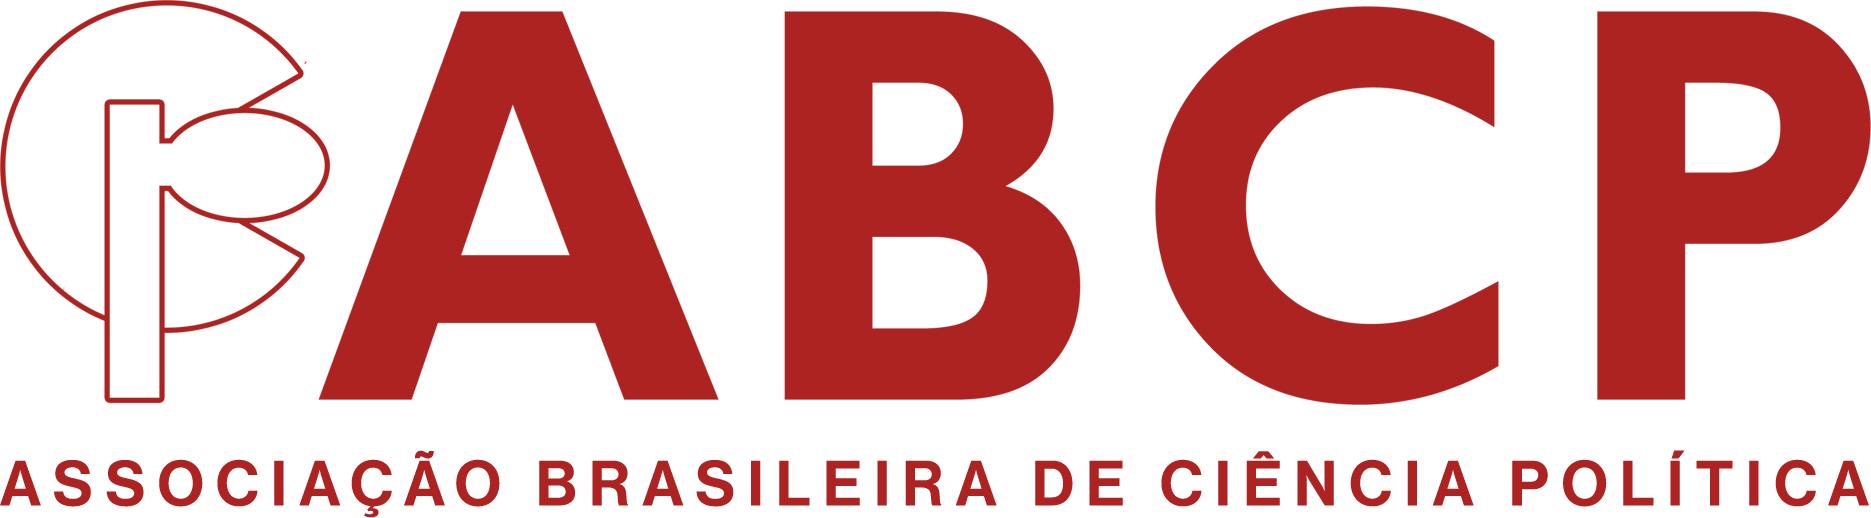 abcp_logo153